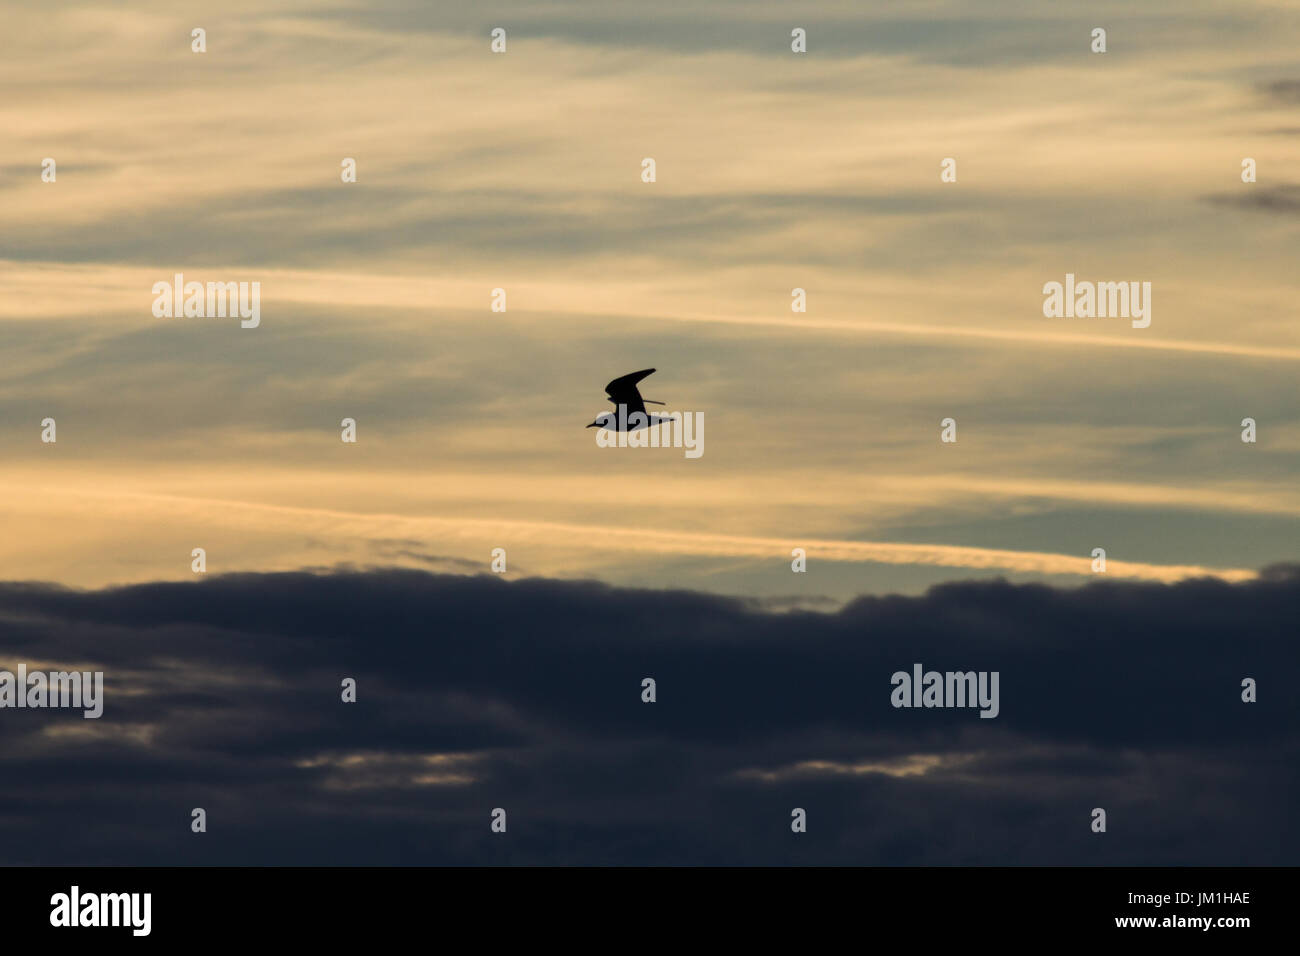 Eine Silhouette von ein Vogel fliegt vor einem Himmel mit schön gefärbten Wolken bei Sonnenuntergang Stockfoto